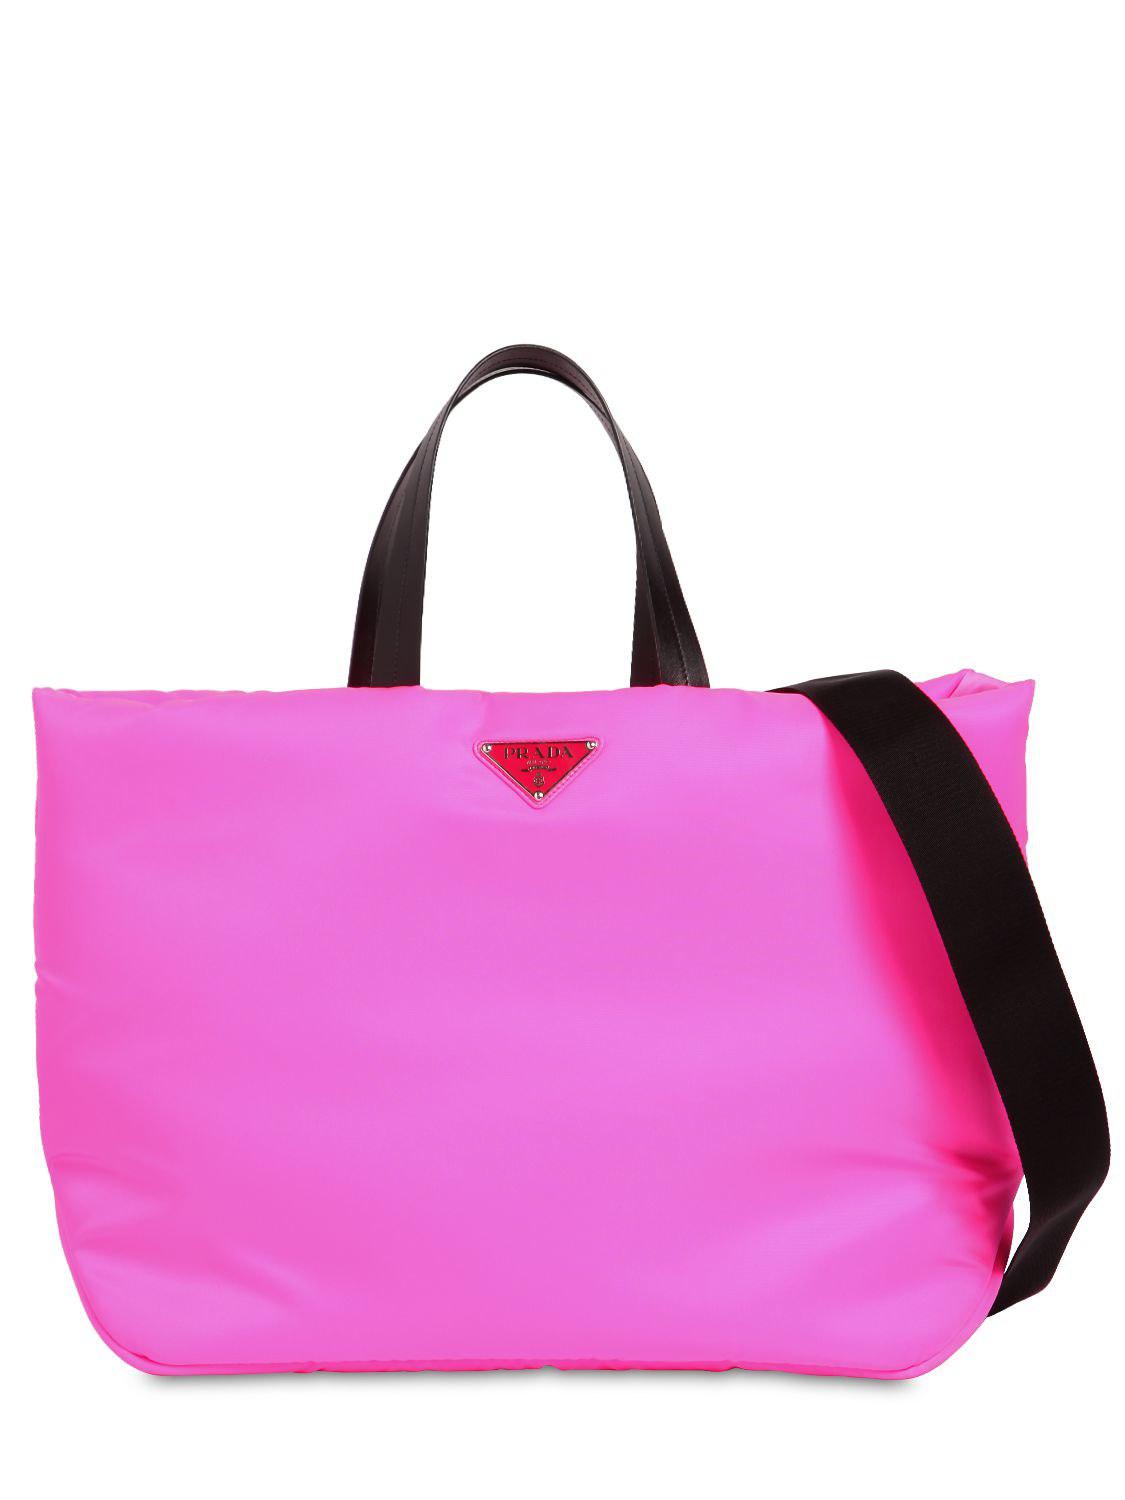 Prada Puffer Nylon Tote Bag in Pink | Lyst